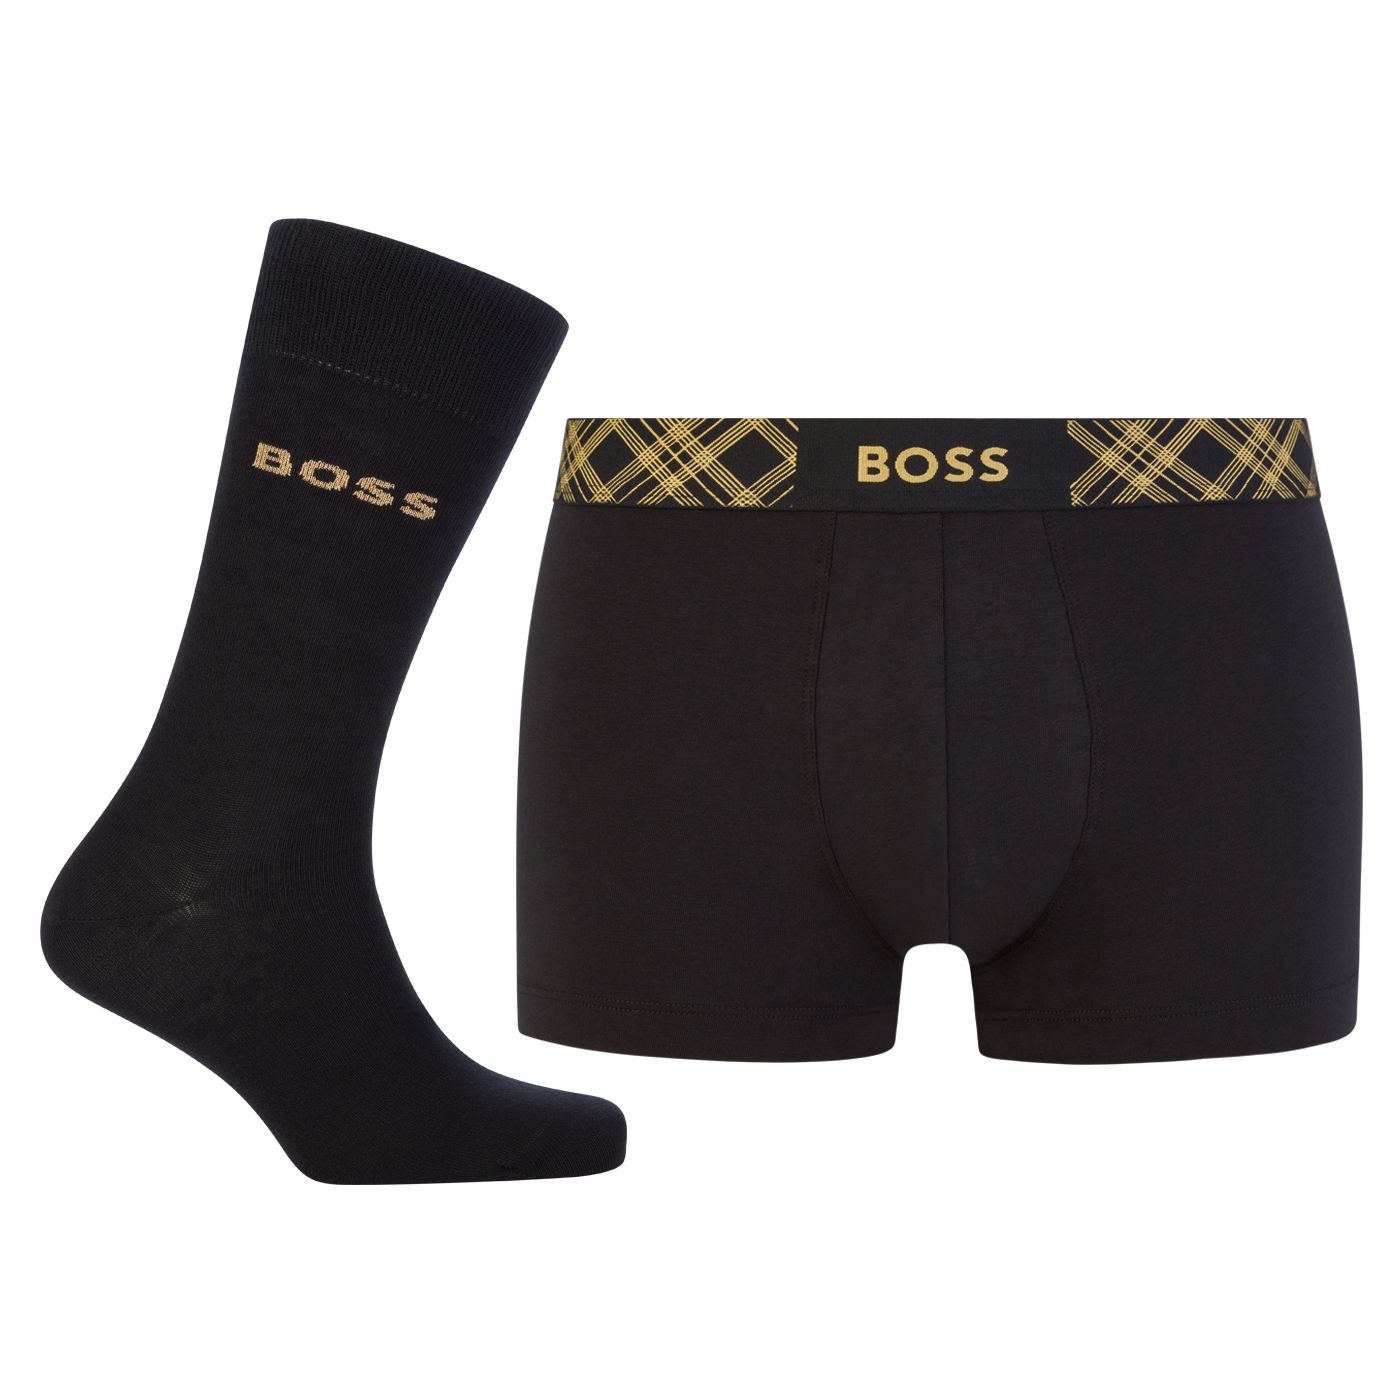 Hugo Boss Pánska sada - boxerky a ponožky BOSS 50500374-001 XXL